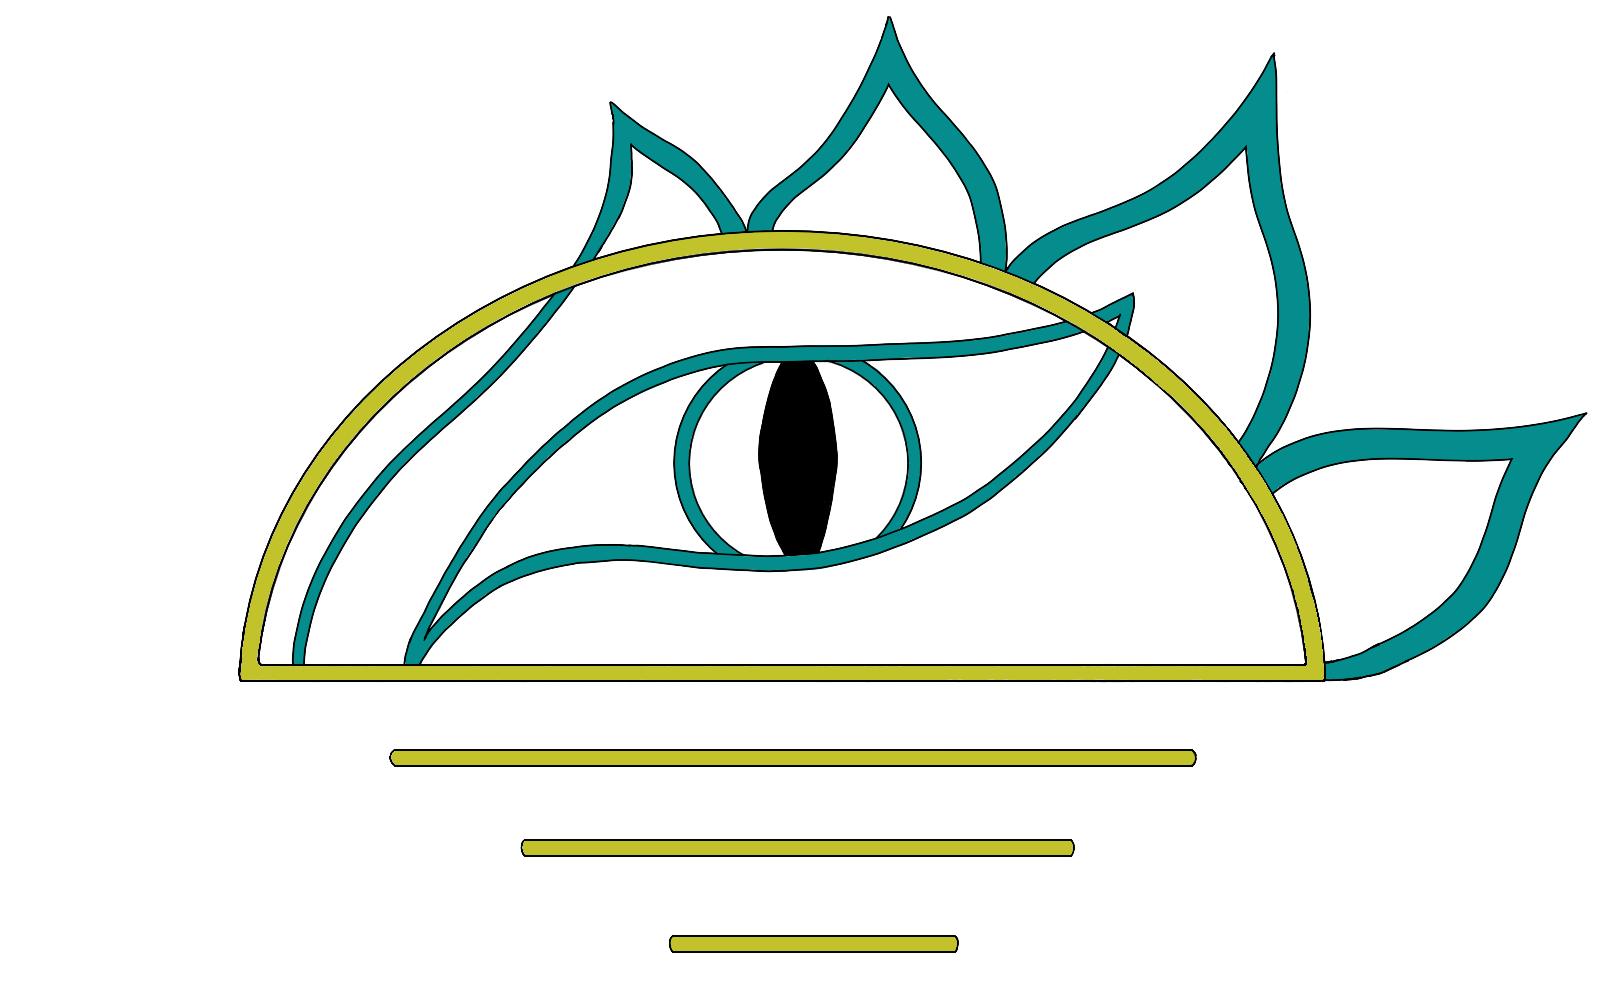 Logotipo de Leyendo al Alba: Dibujo minimalista de un sol amaneciendo a través del cual se asoma el ojo y las escamas de la cabeza de un dragón.